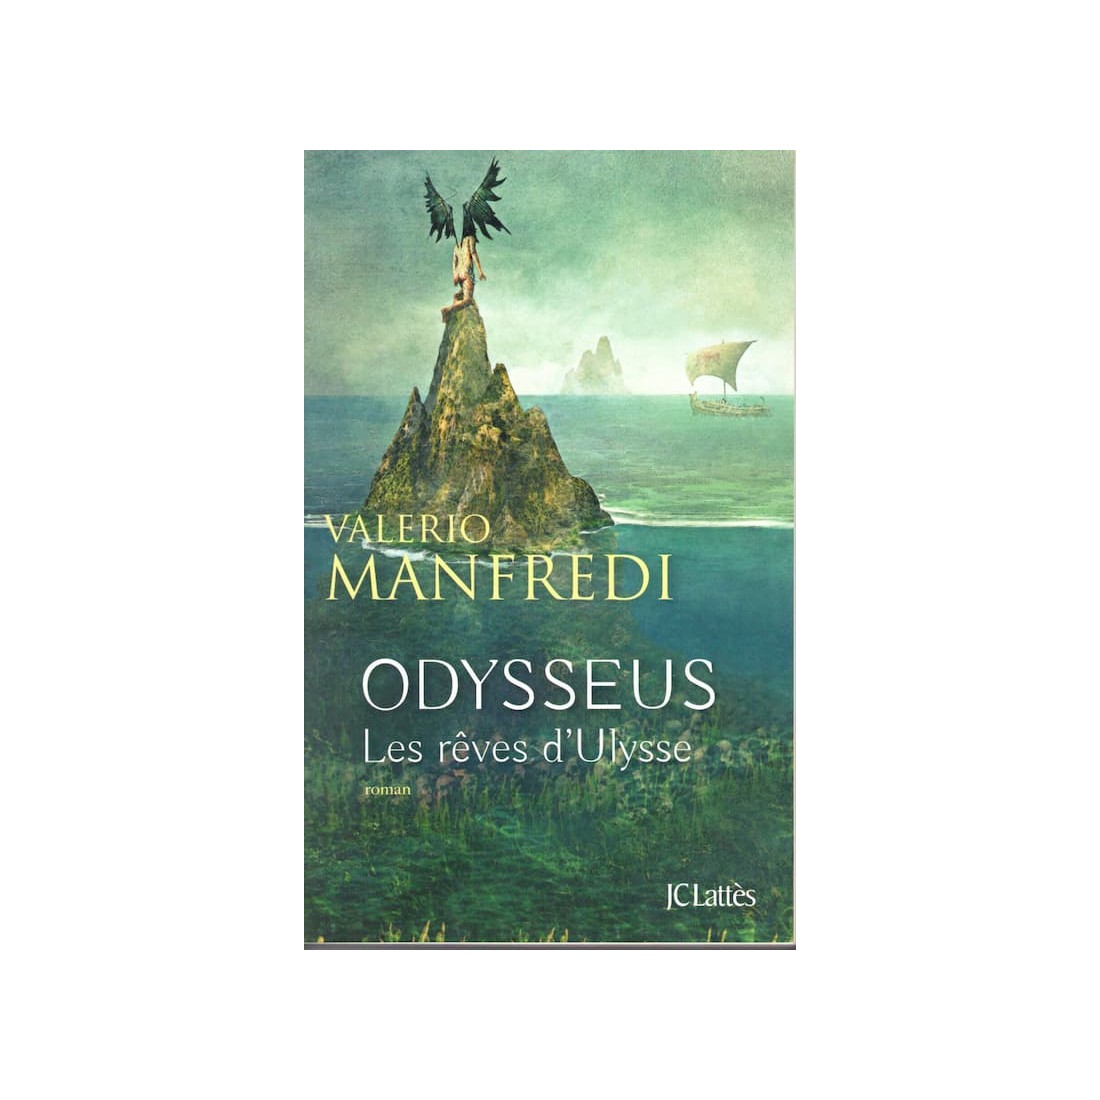 Odysseus - Roman de Valerio Manfredi - Ocazlivres.com